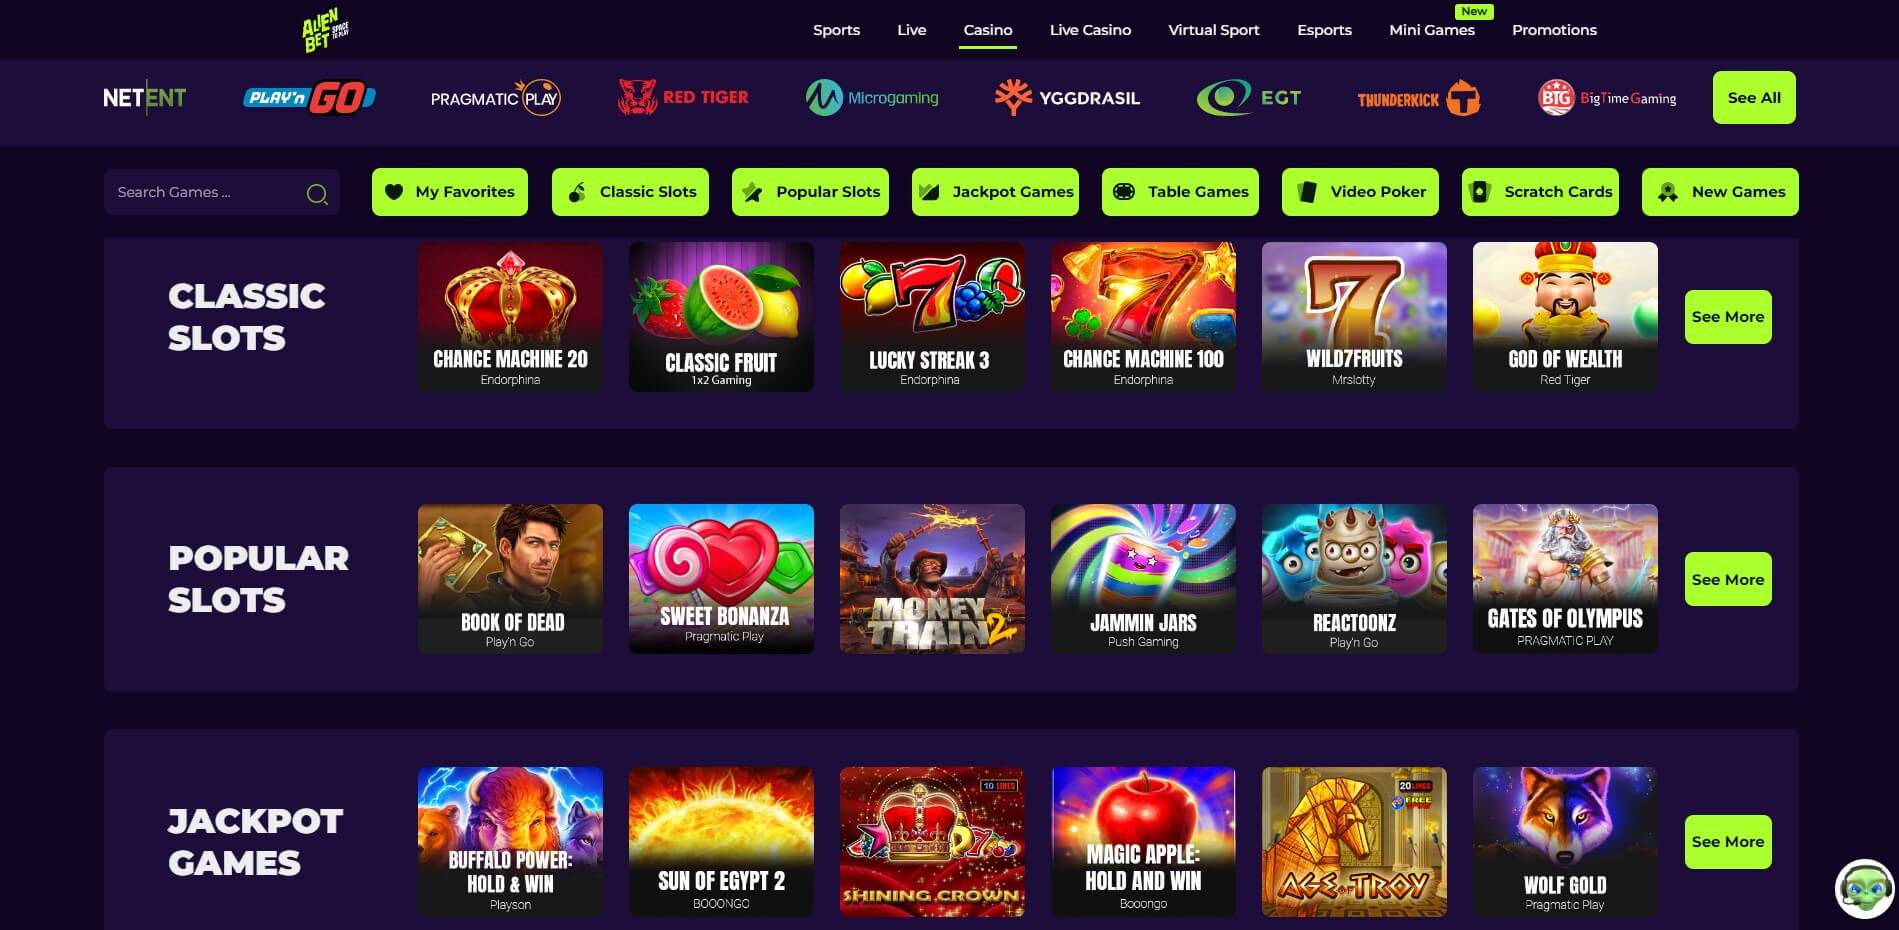 AlienBet Casino Games